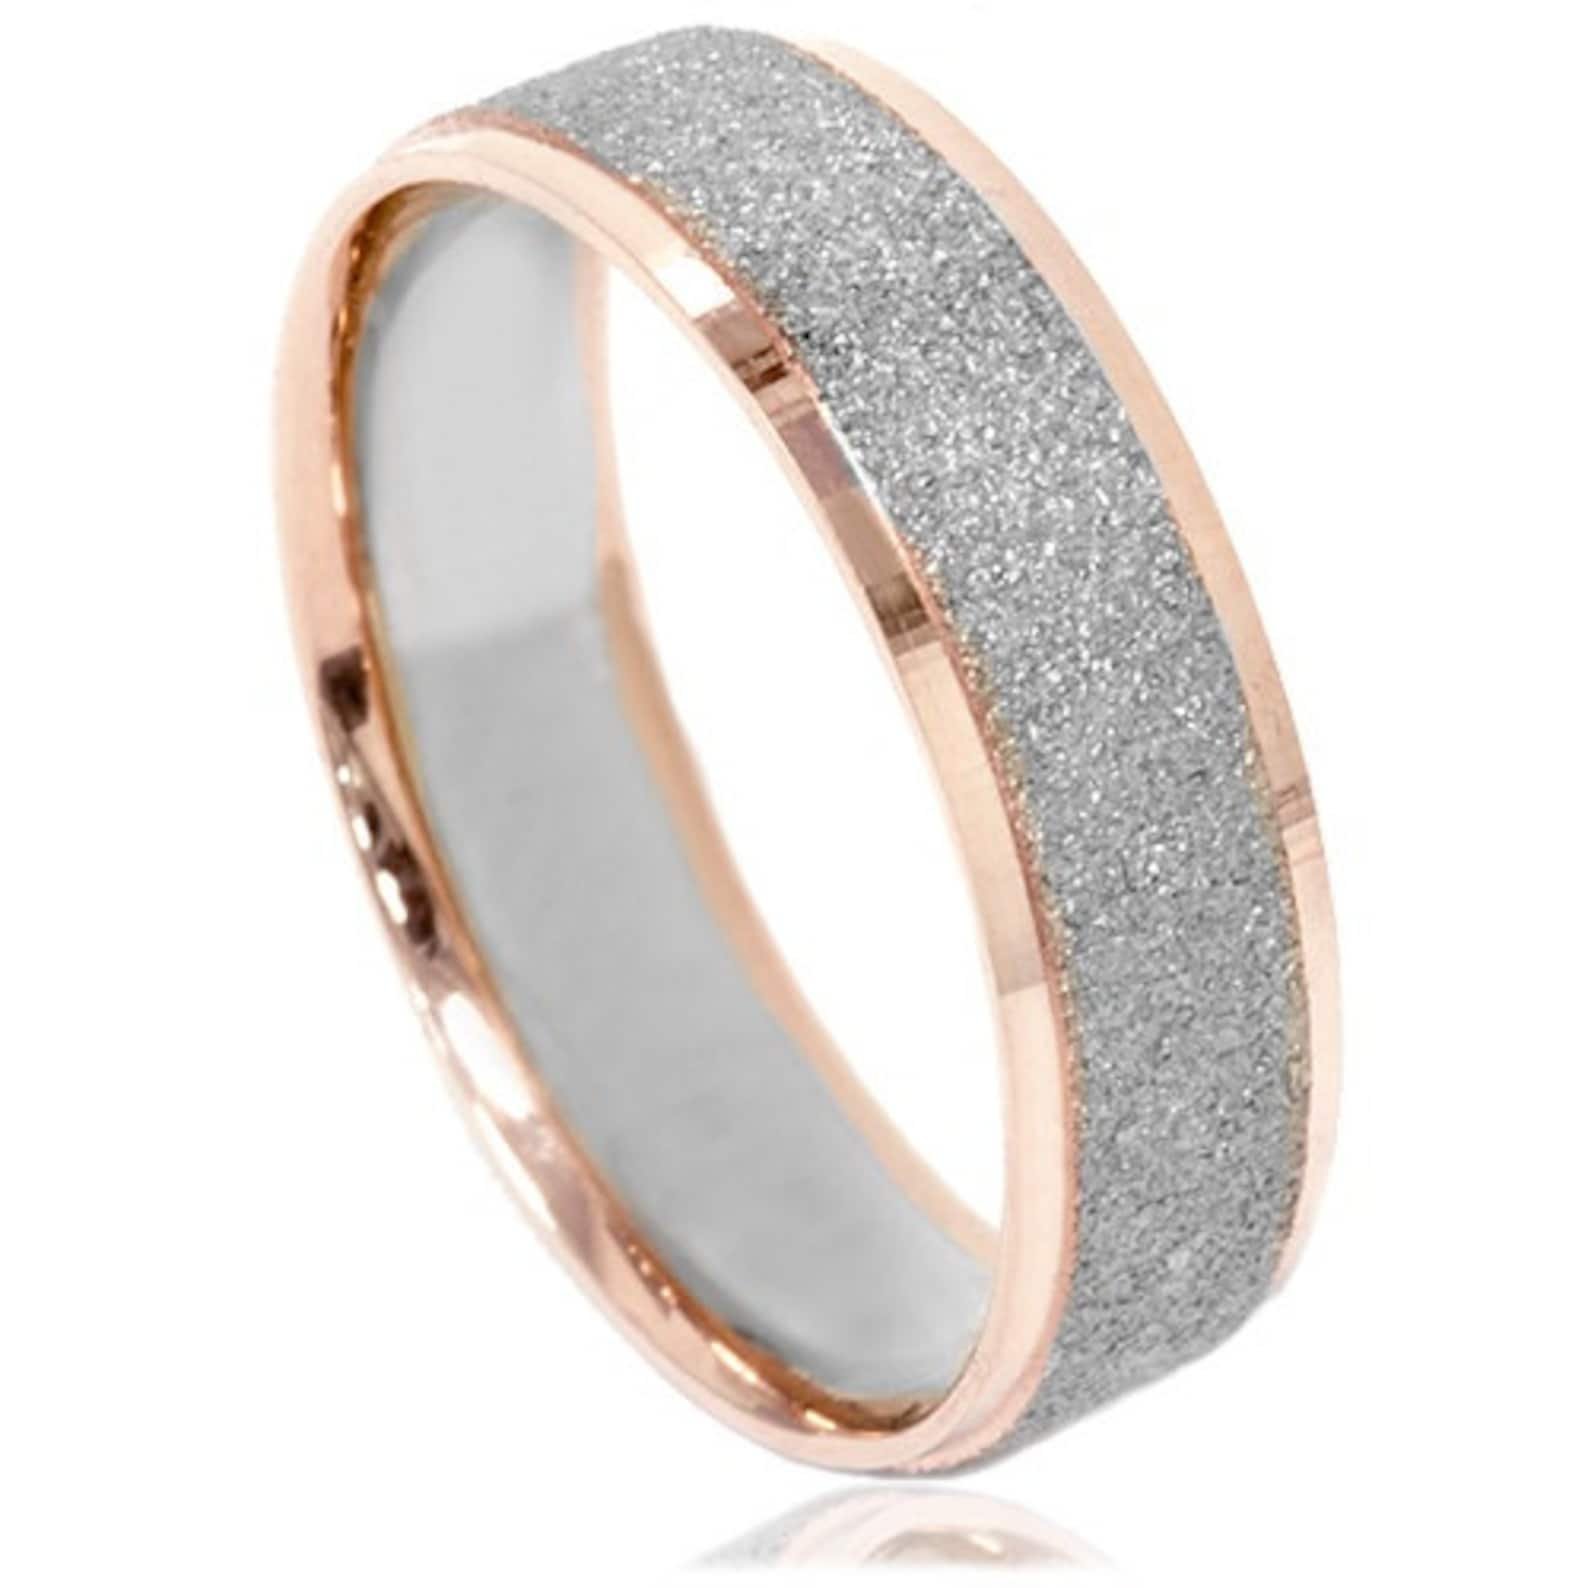 Золотое кольцо с алмазной. Золотое кольцо обручальное с алмазной крошкой 415142. Обручальные кольца Меркури. Золотой прииск обручальные кольца. Обручальное кольцо 1385603 1 1 1 с бриллиантовой крошкой.